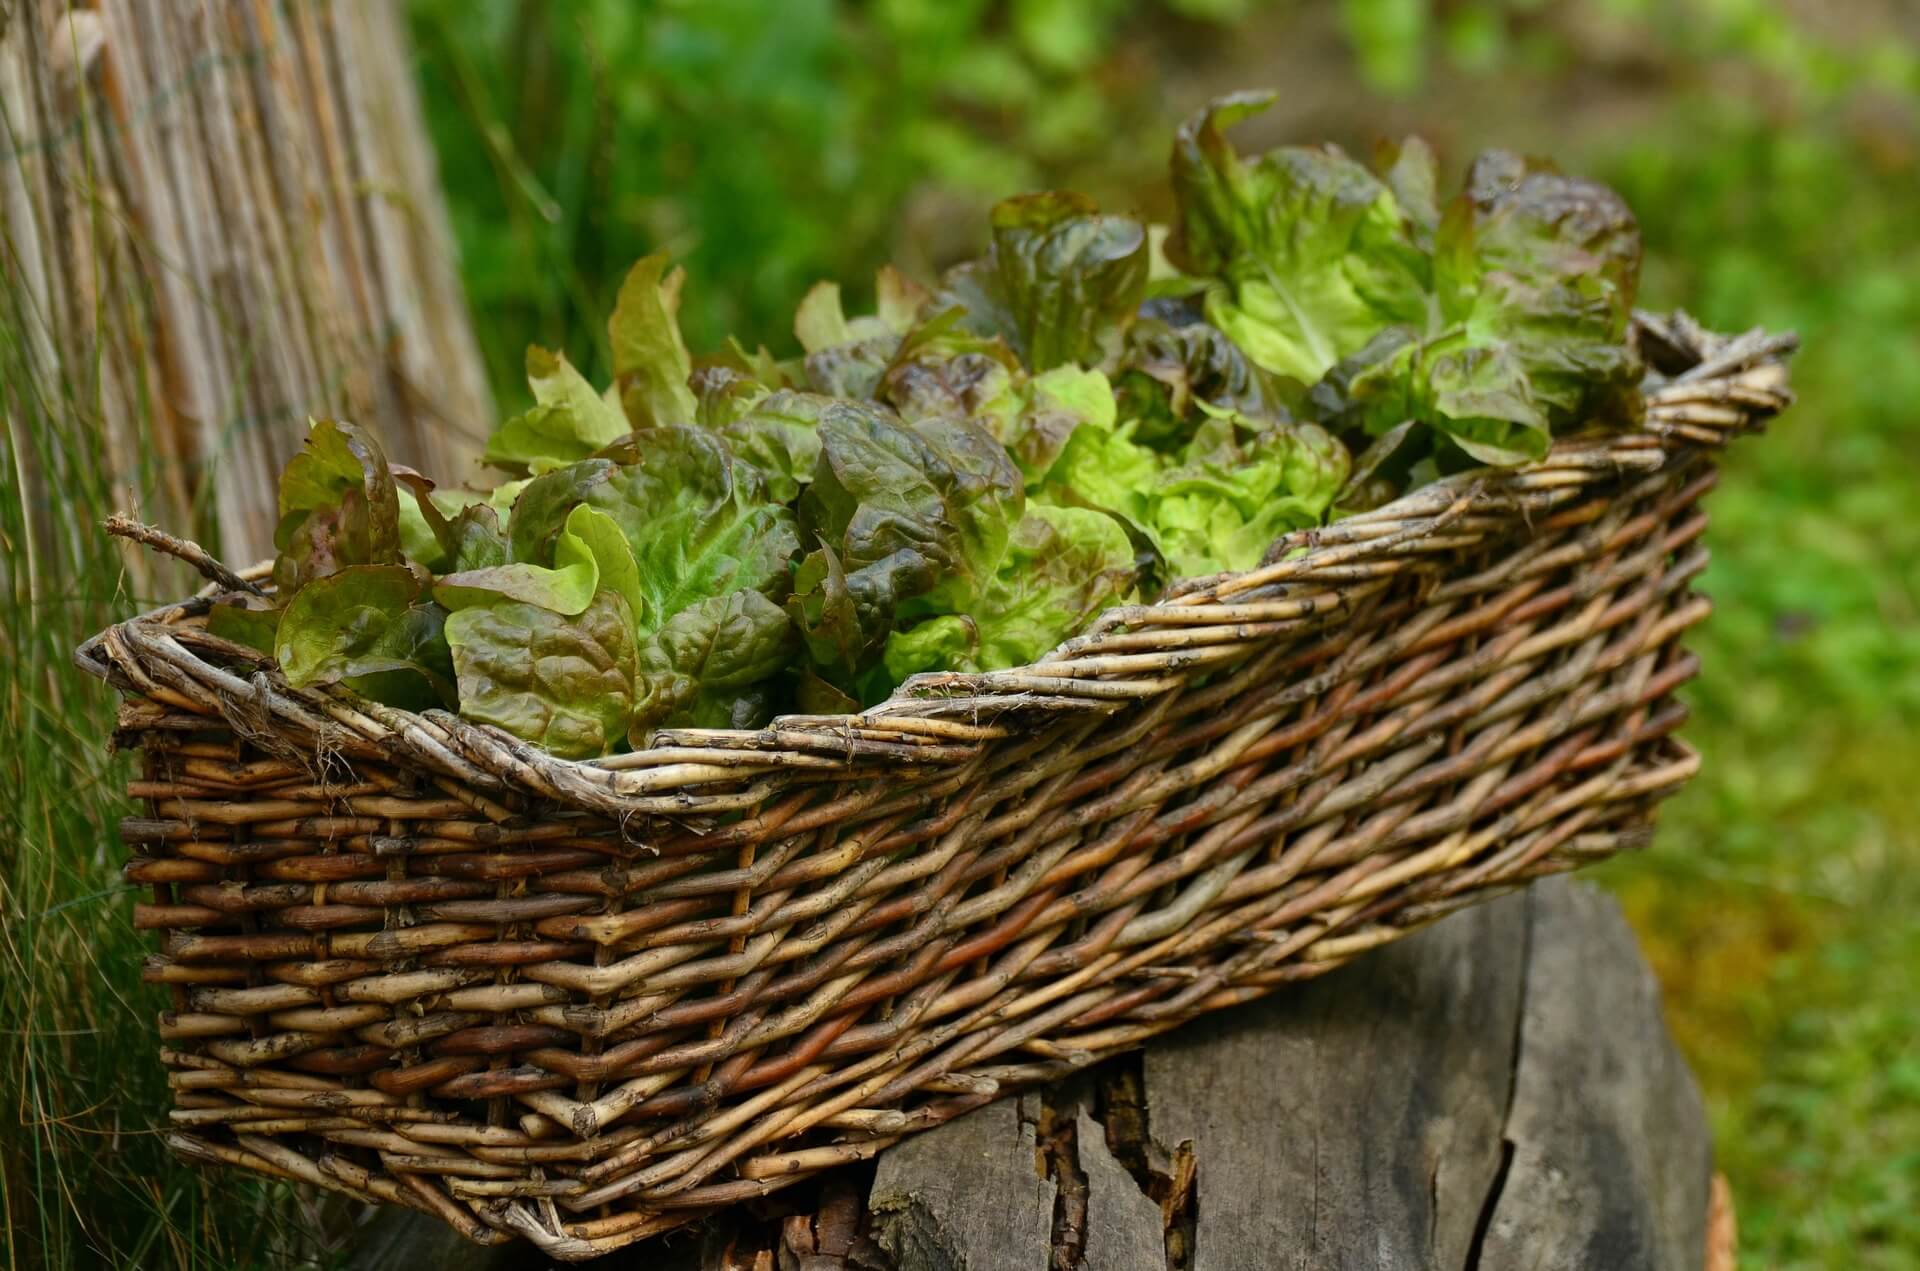 A basket of lettuce